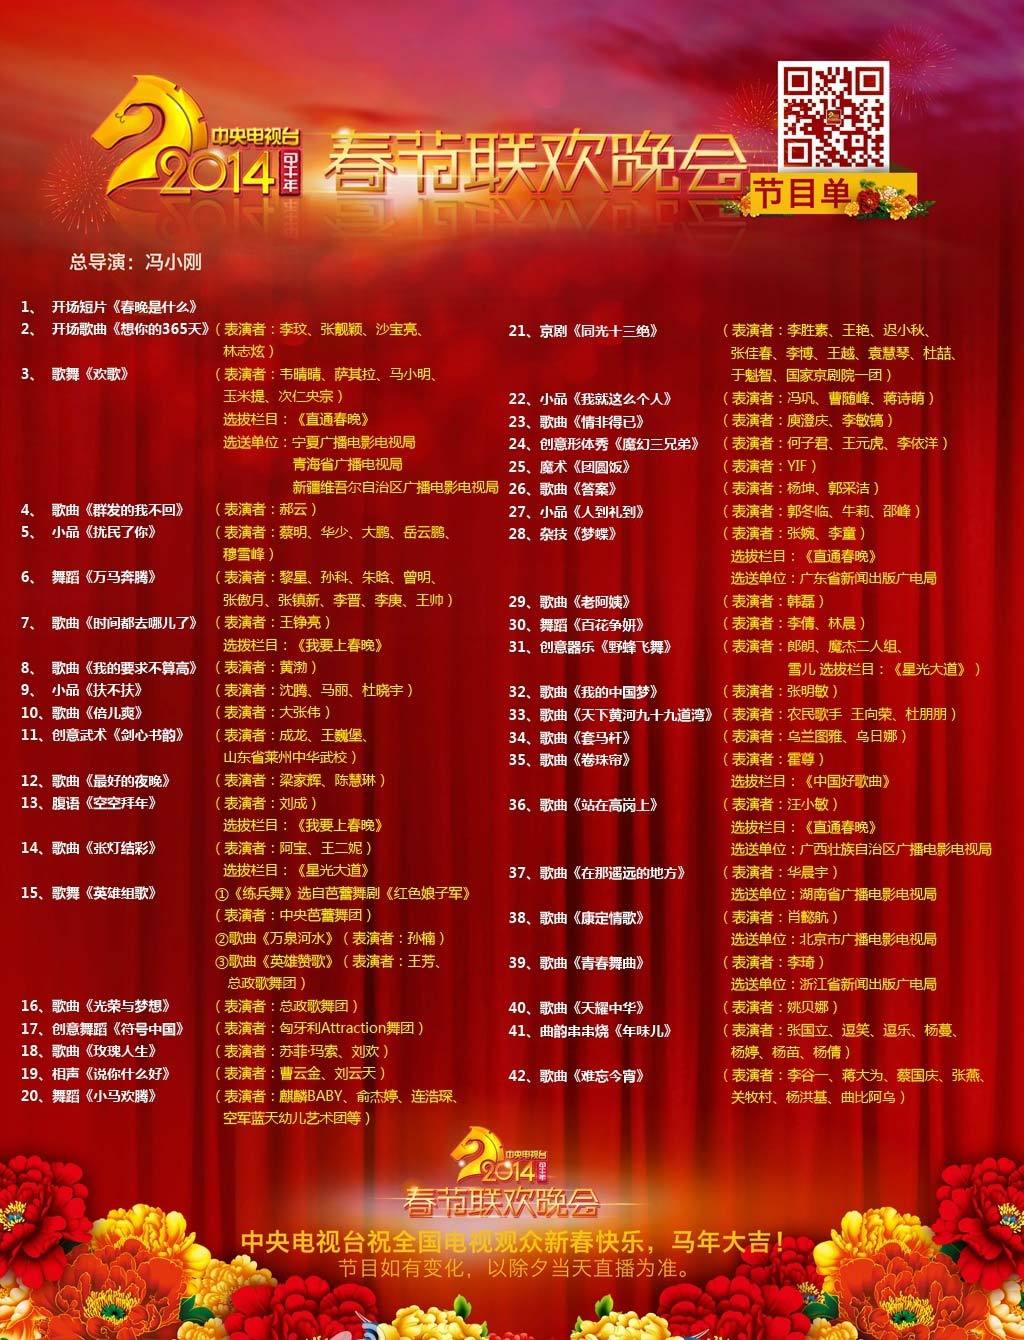 2014中央电视台春节联欢晚会节目单正式发布。其中语言类节目5个，苏菲玛索和李敏镐将分别搭档刘欢和庾澄庆登台献唱，姚贝娜将在零点跨年演唱。
